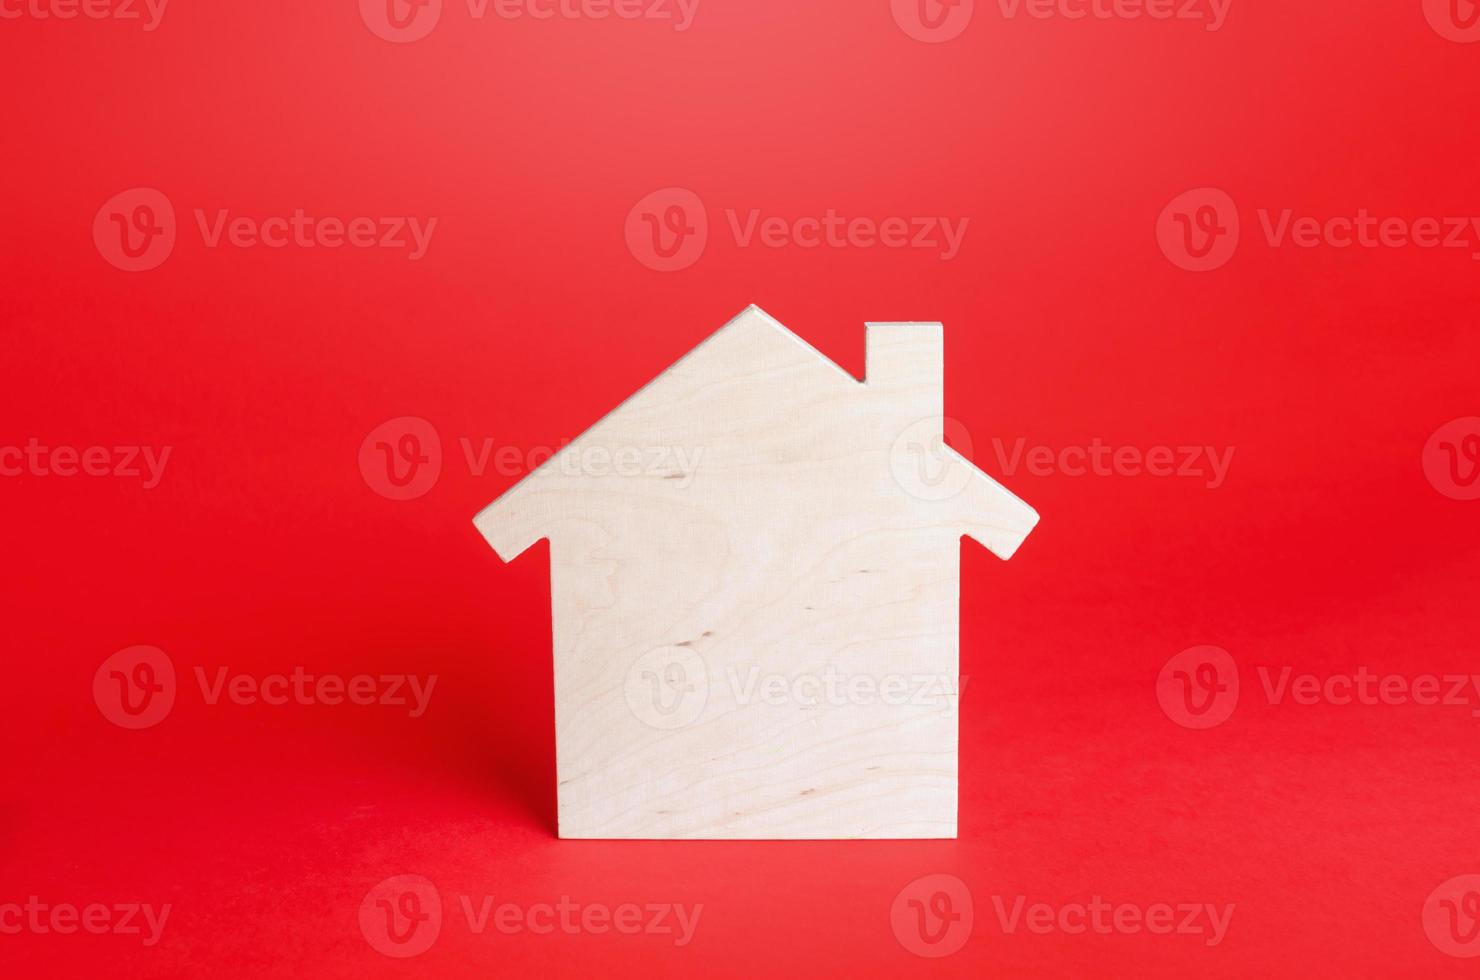 tömma tom trä- hus på röd bakgrund. uppköp och försäljning verklig egendom. hus, fastighetsmäklare tjänster. renovering och Hem förbättring. kort och lång termin hyror. inteckning lån. byggnad underhåll foto